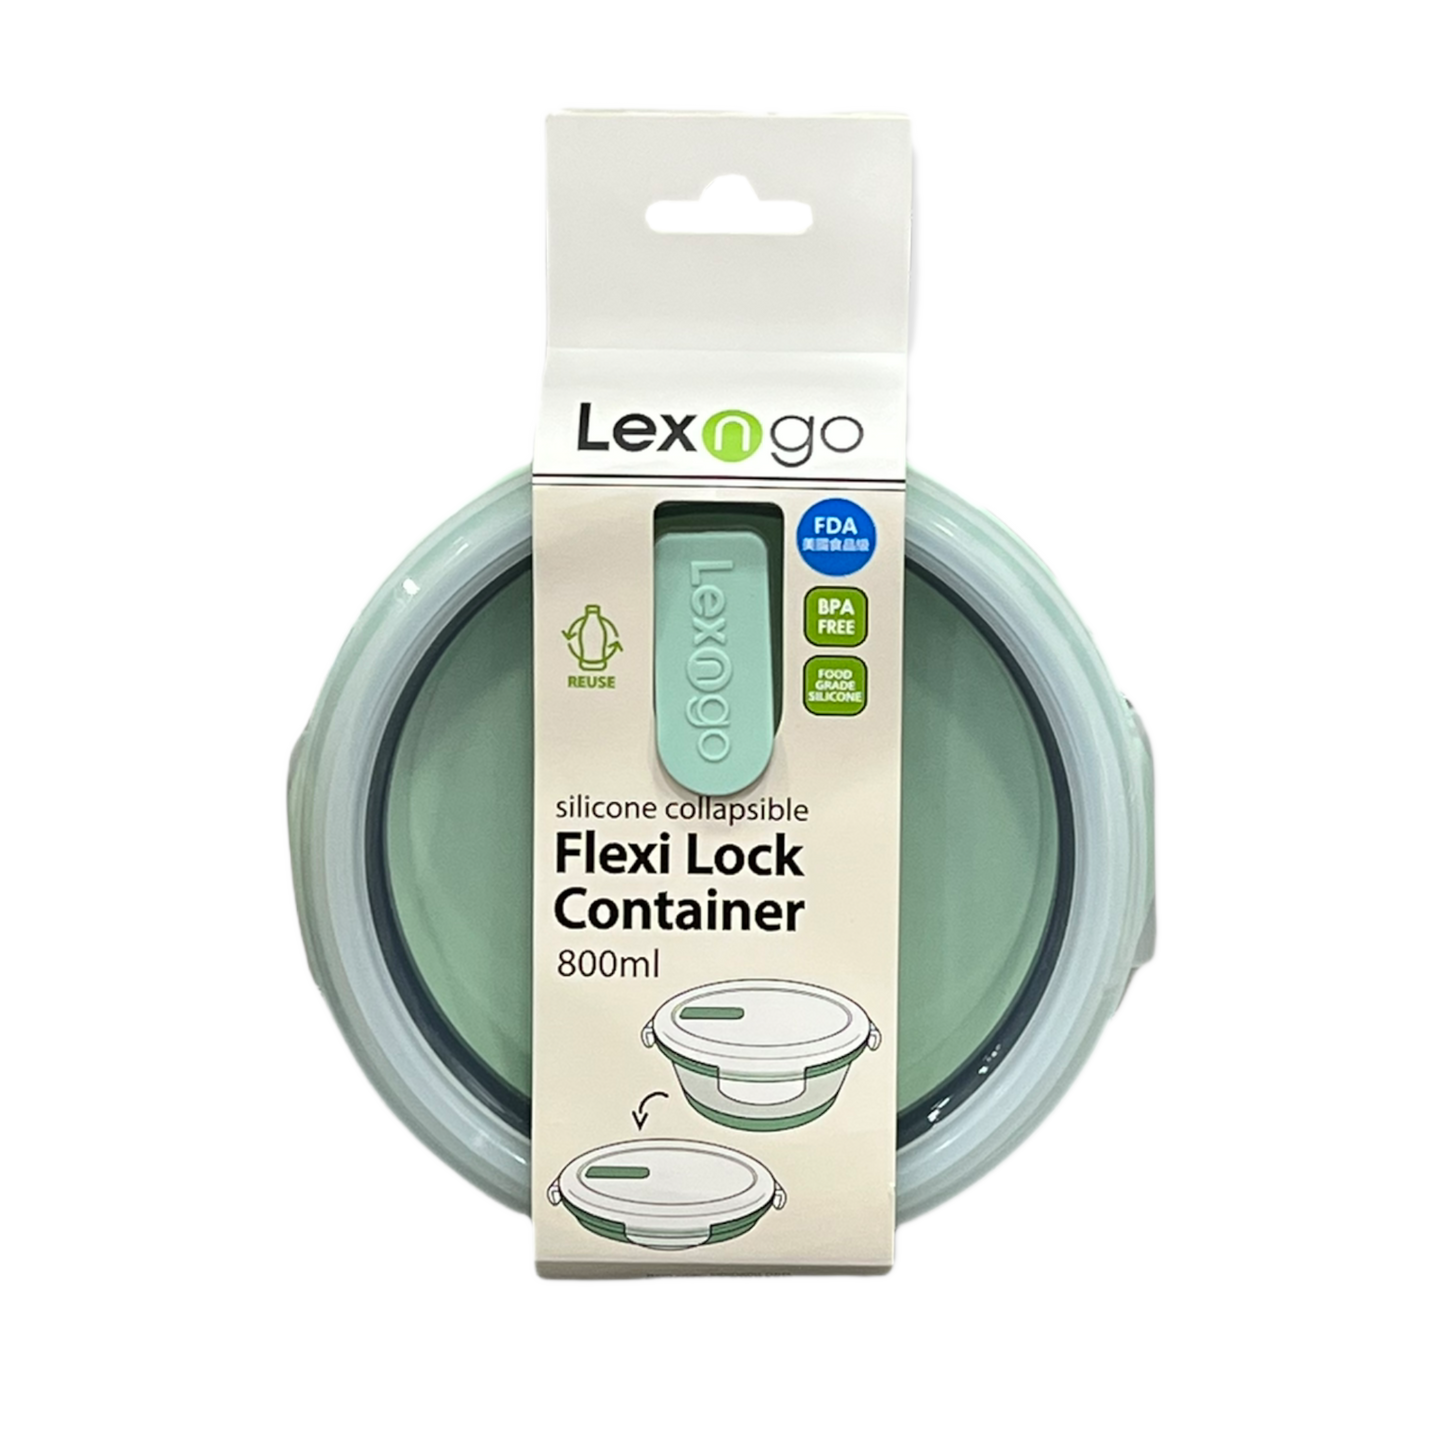 Lexngo Flexi Lock Container Round